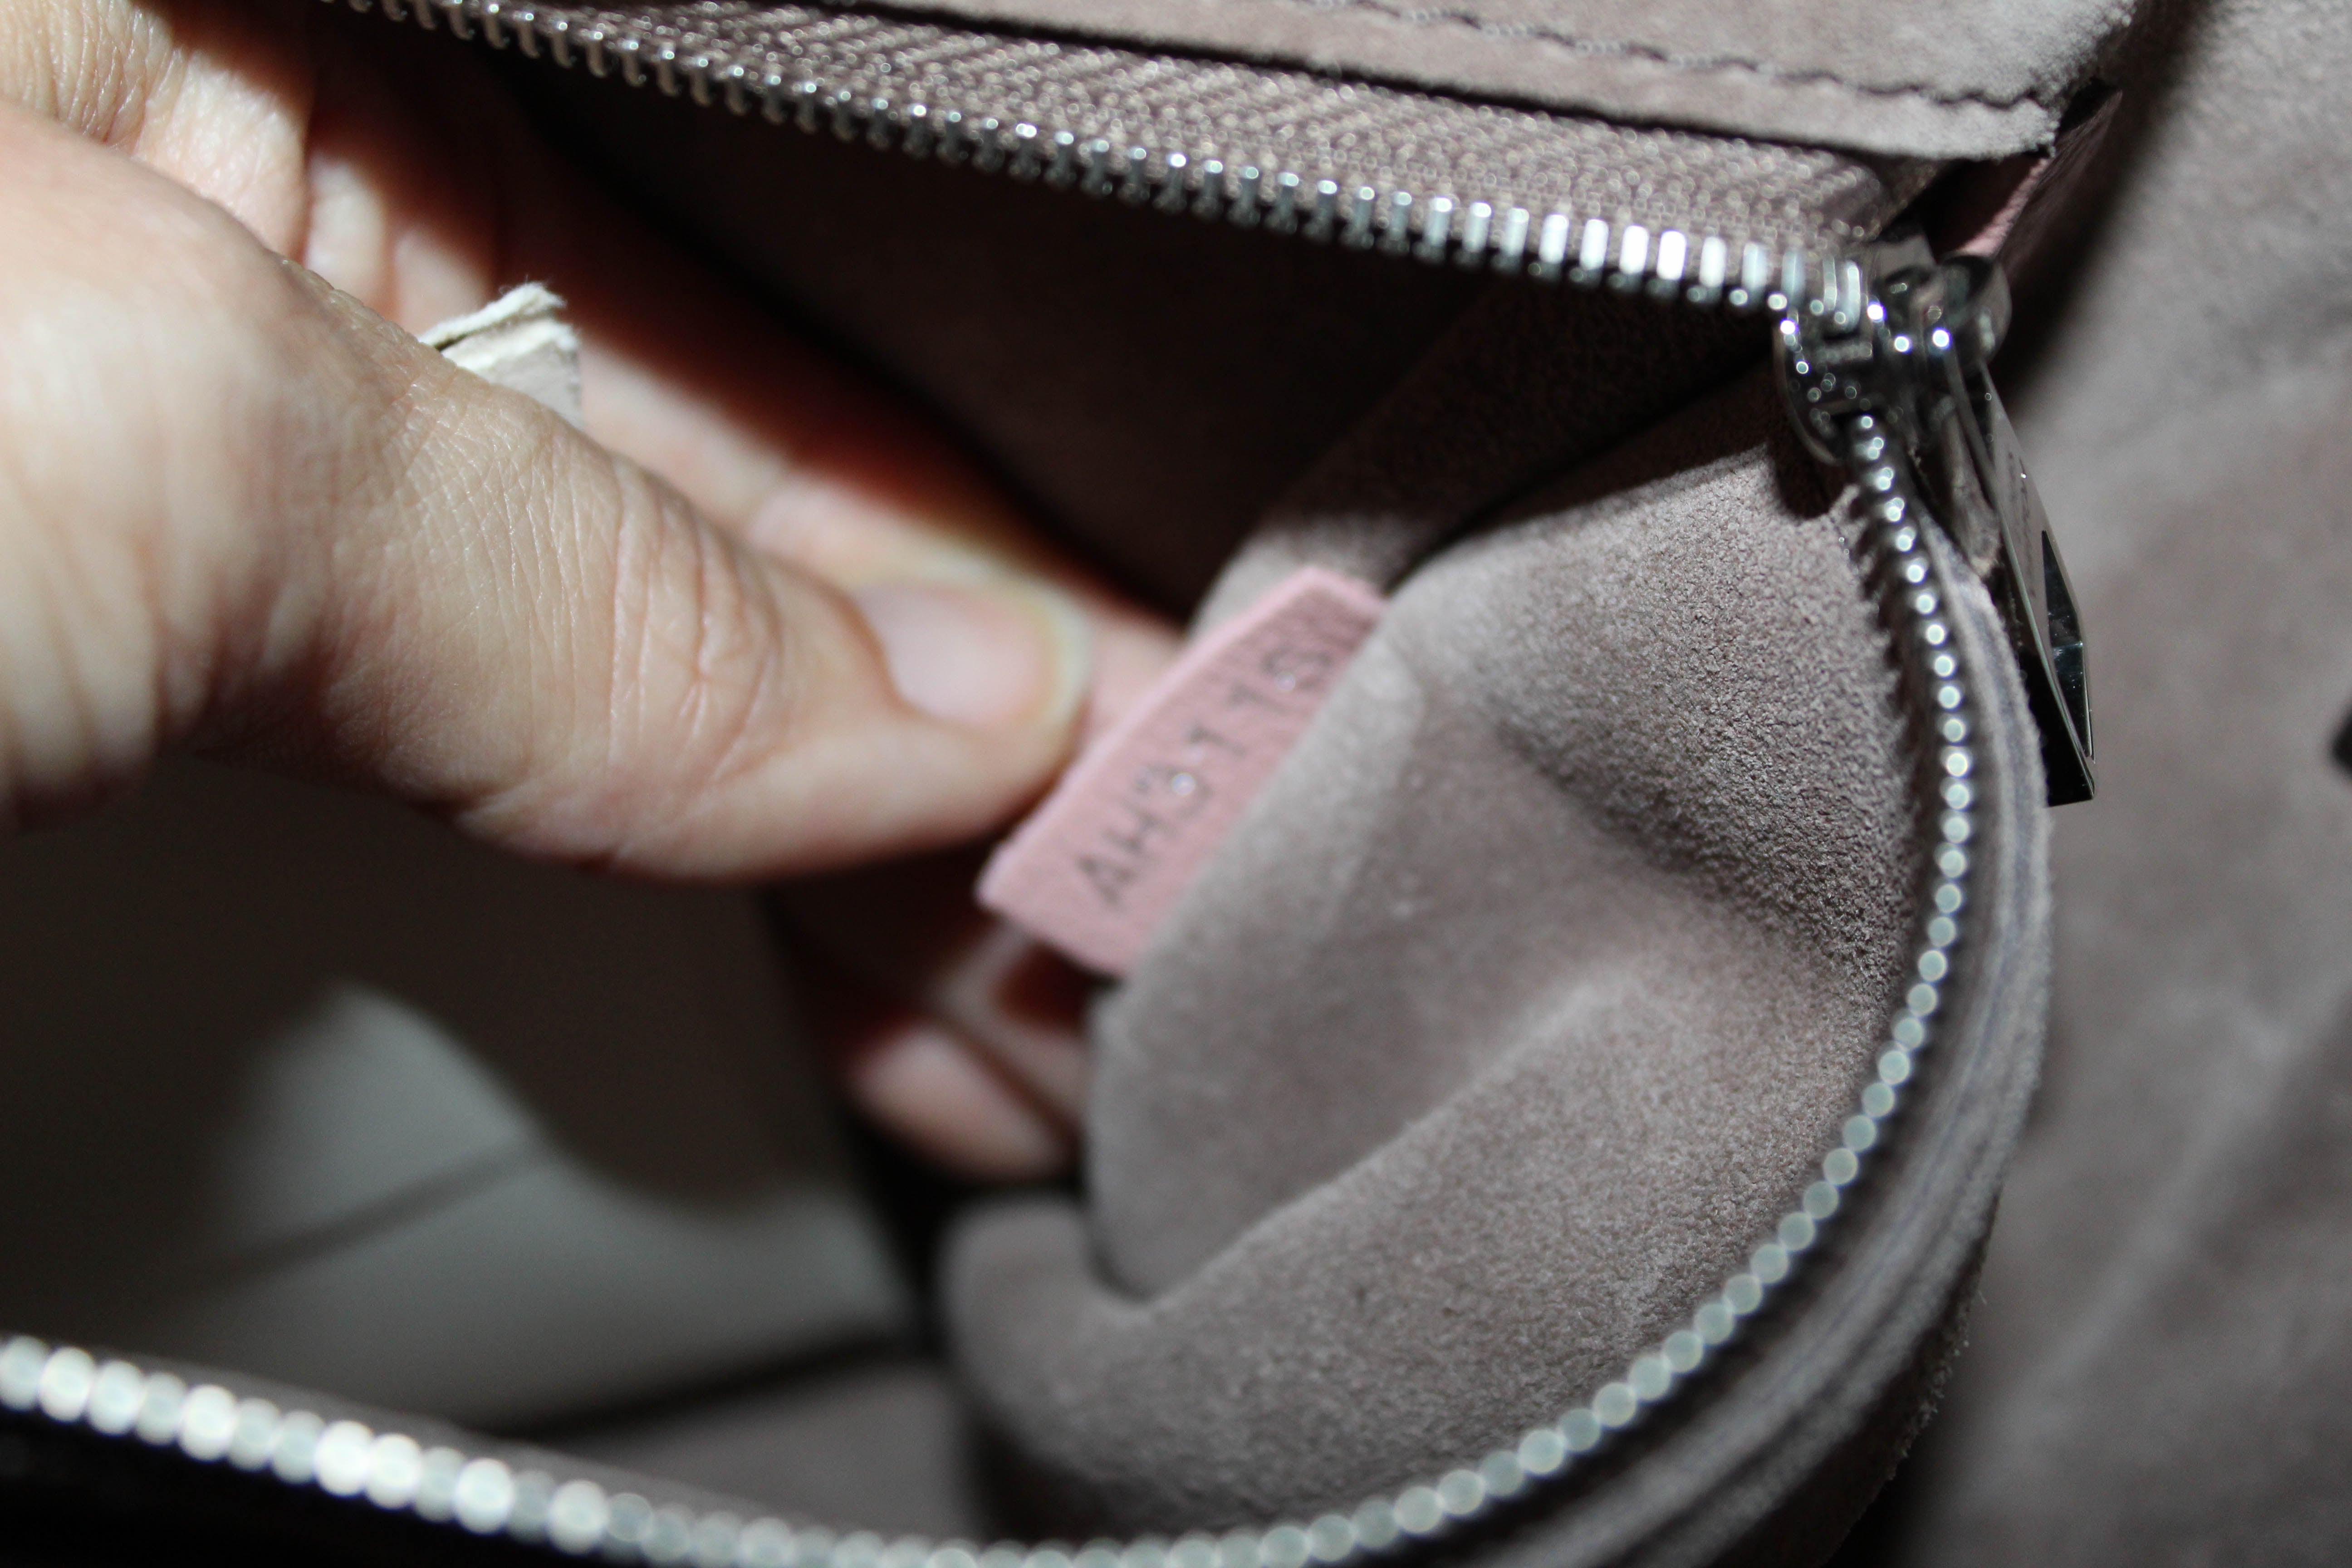 Authentic Louis Vuitton Pink Veau Cachemire Python Lockit PM Handbag